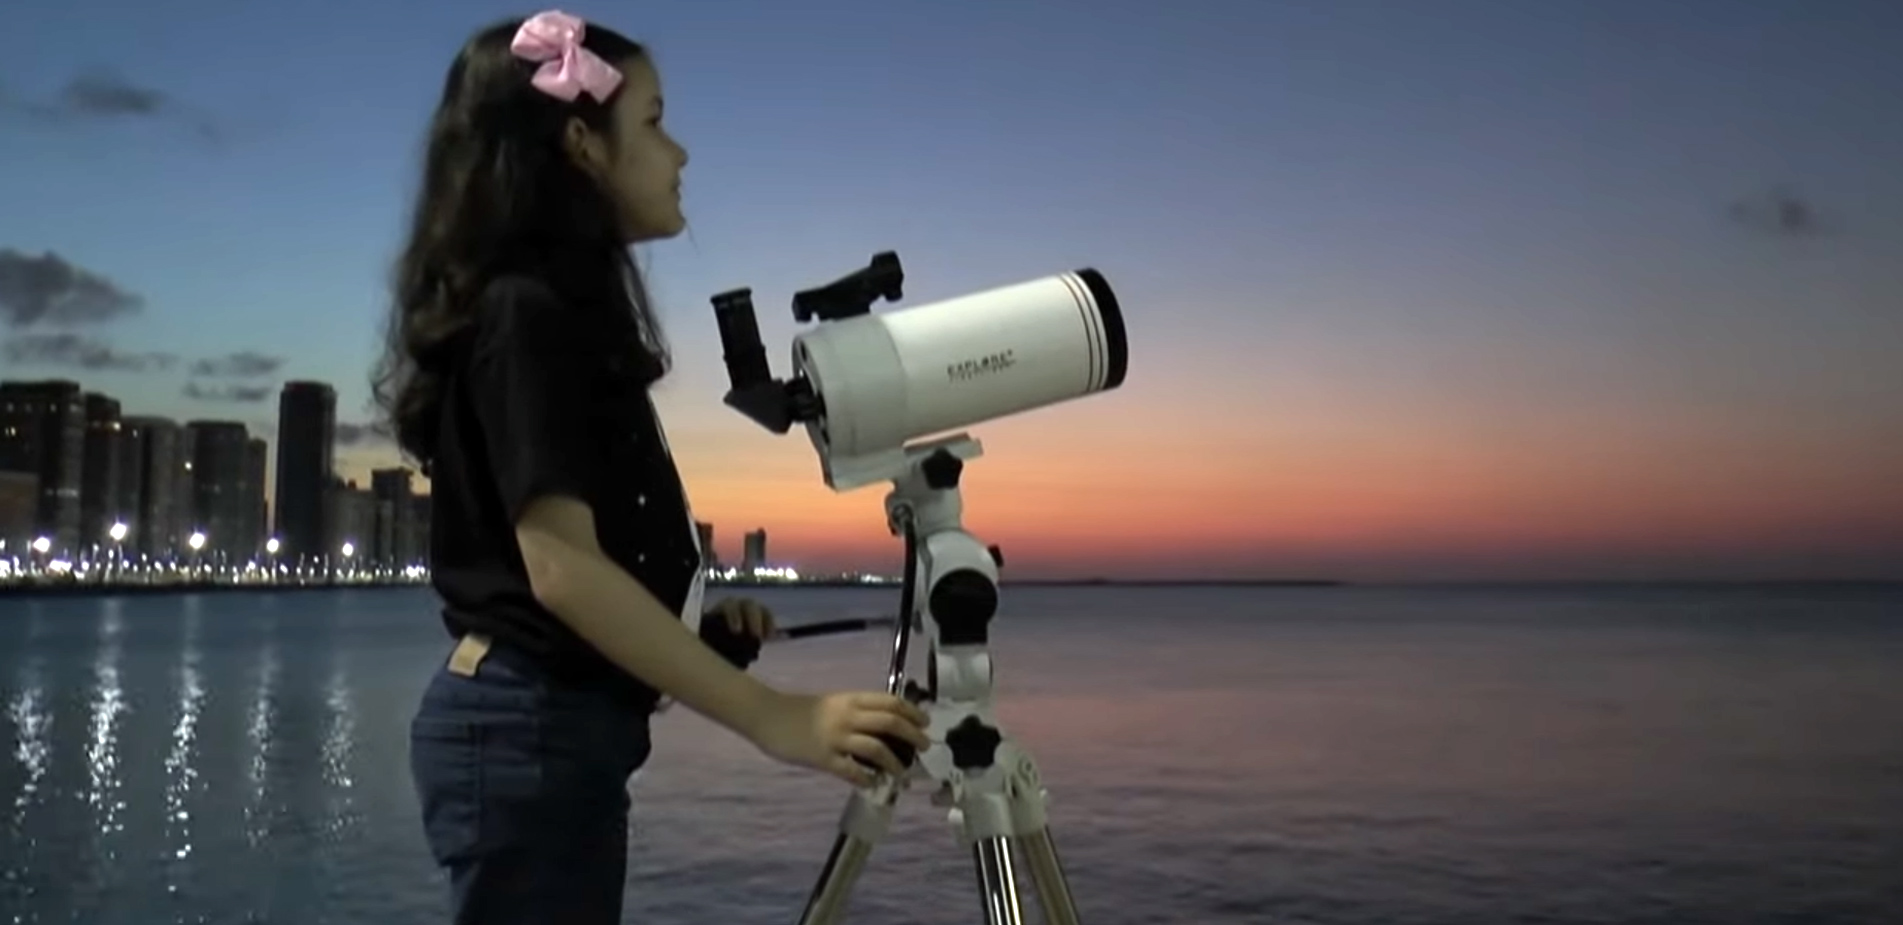 Νικόλ Ολιβέιρα: Μια οκτάχρονη από τη Βραζιλία είναι η νεαρότερη αστρονόμος στον κόσμο